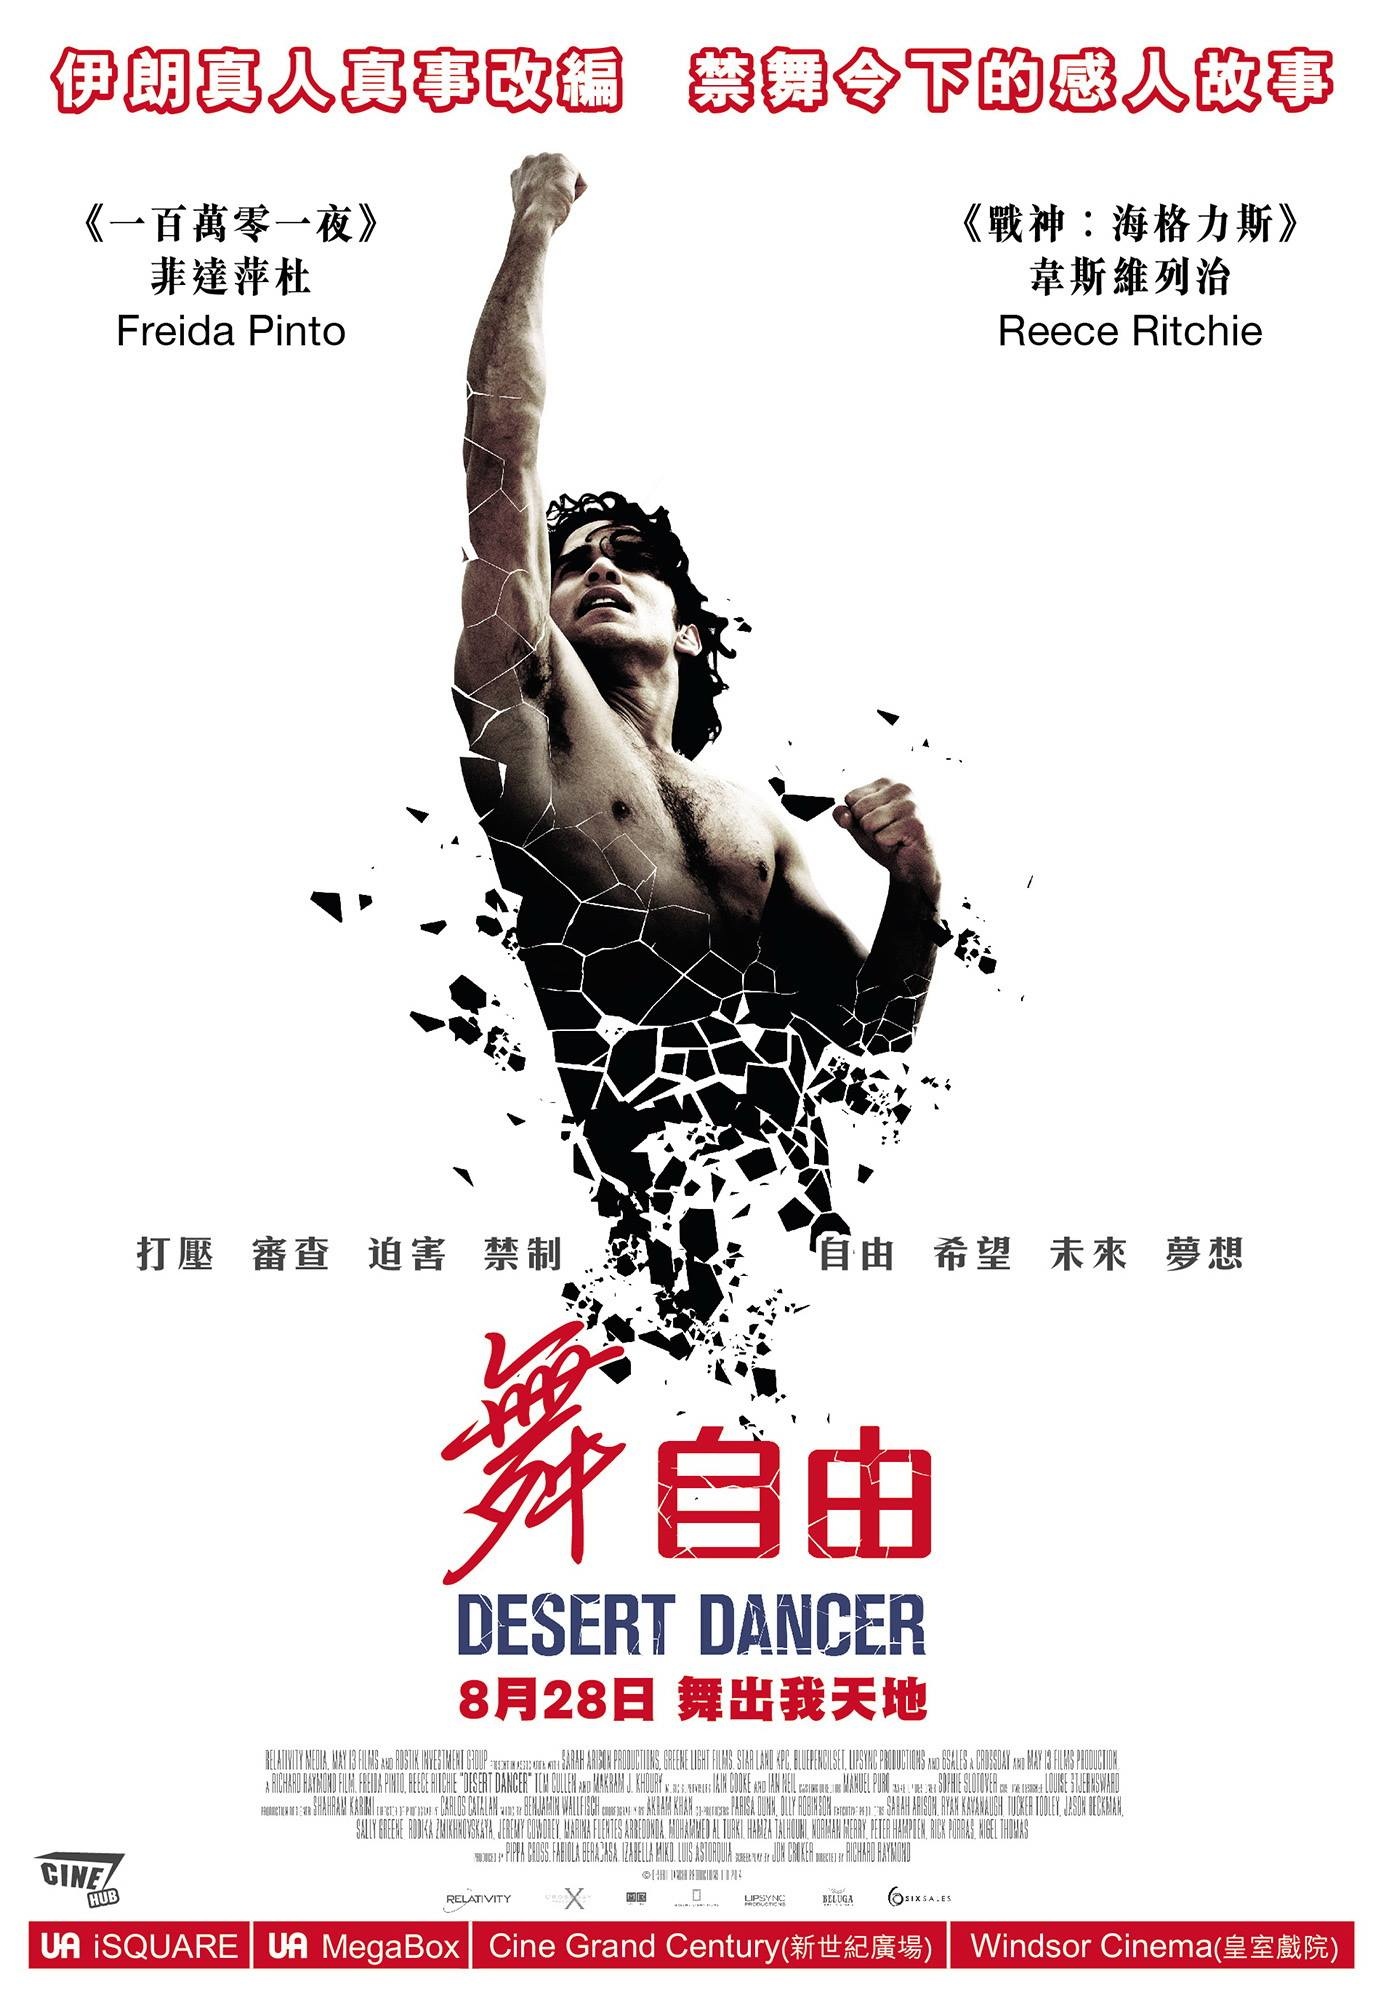 电影《热烈》的舞者拿到了世界冠军_北京时间